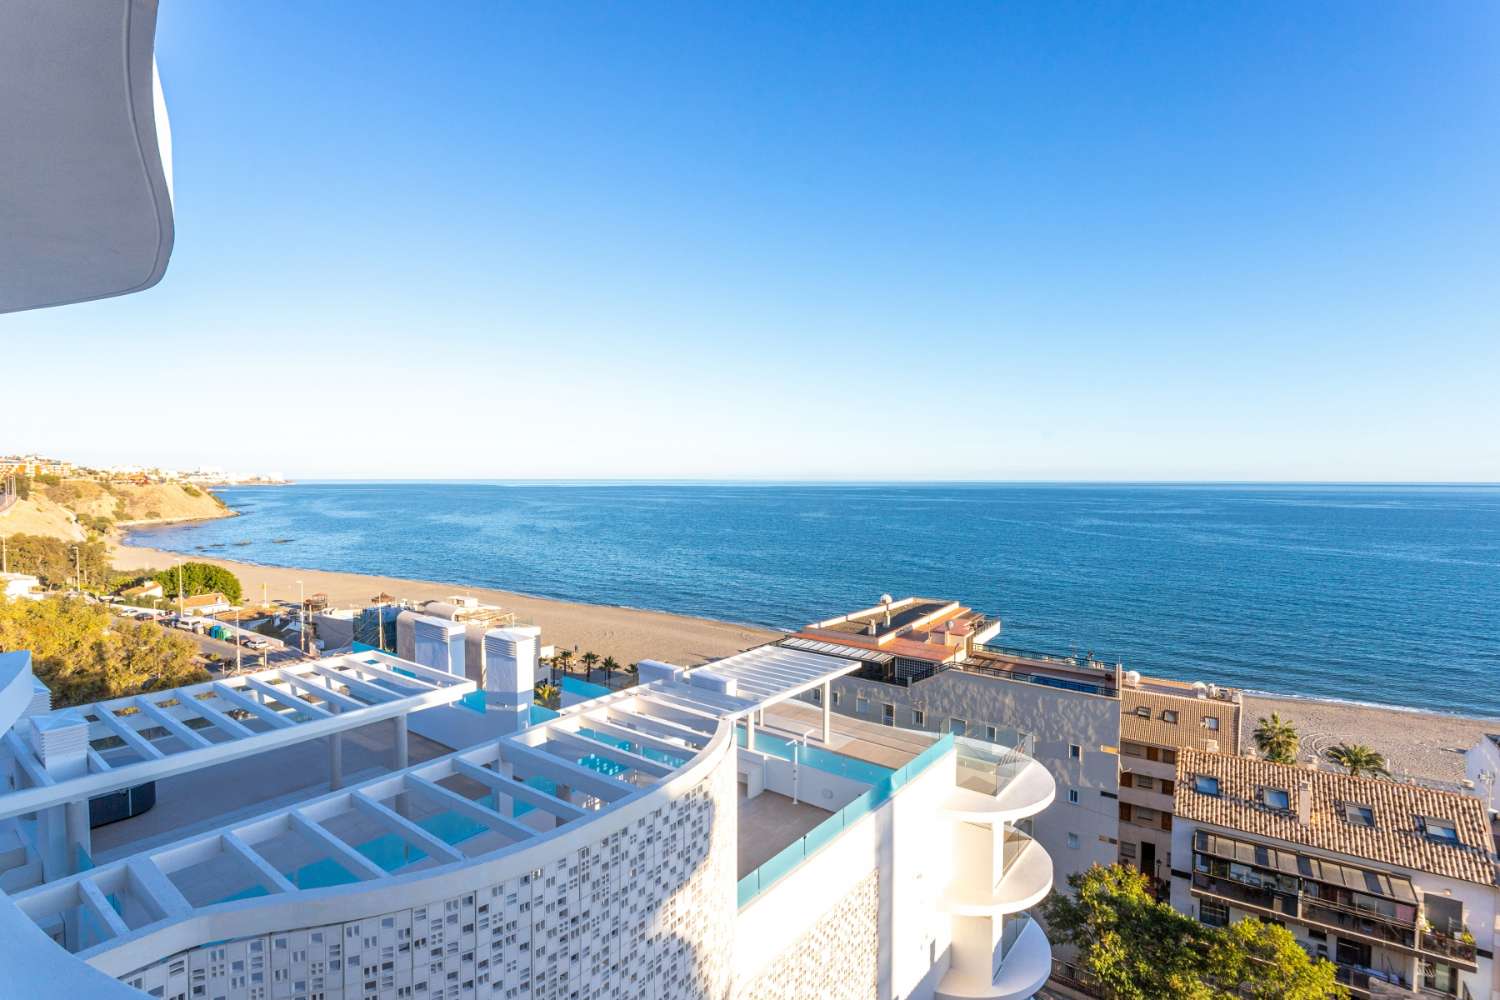 Venta ático con vistas al mar y a 50 m de la playa  Benalmadena costa  Málaga